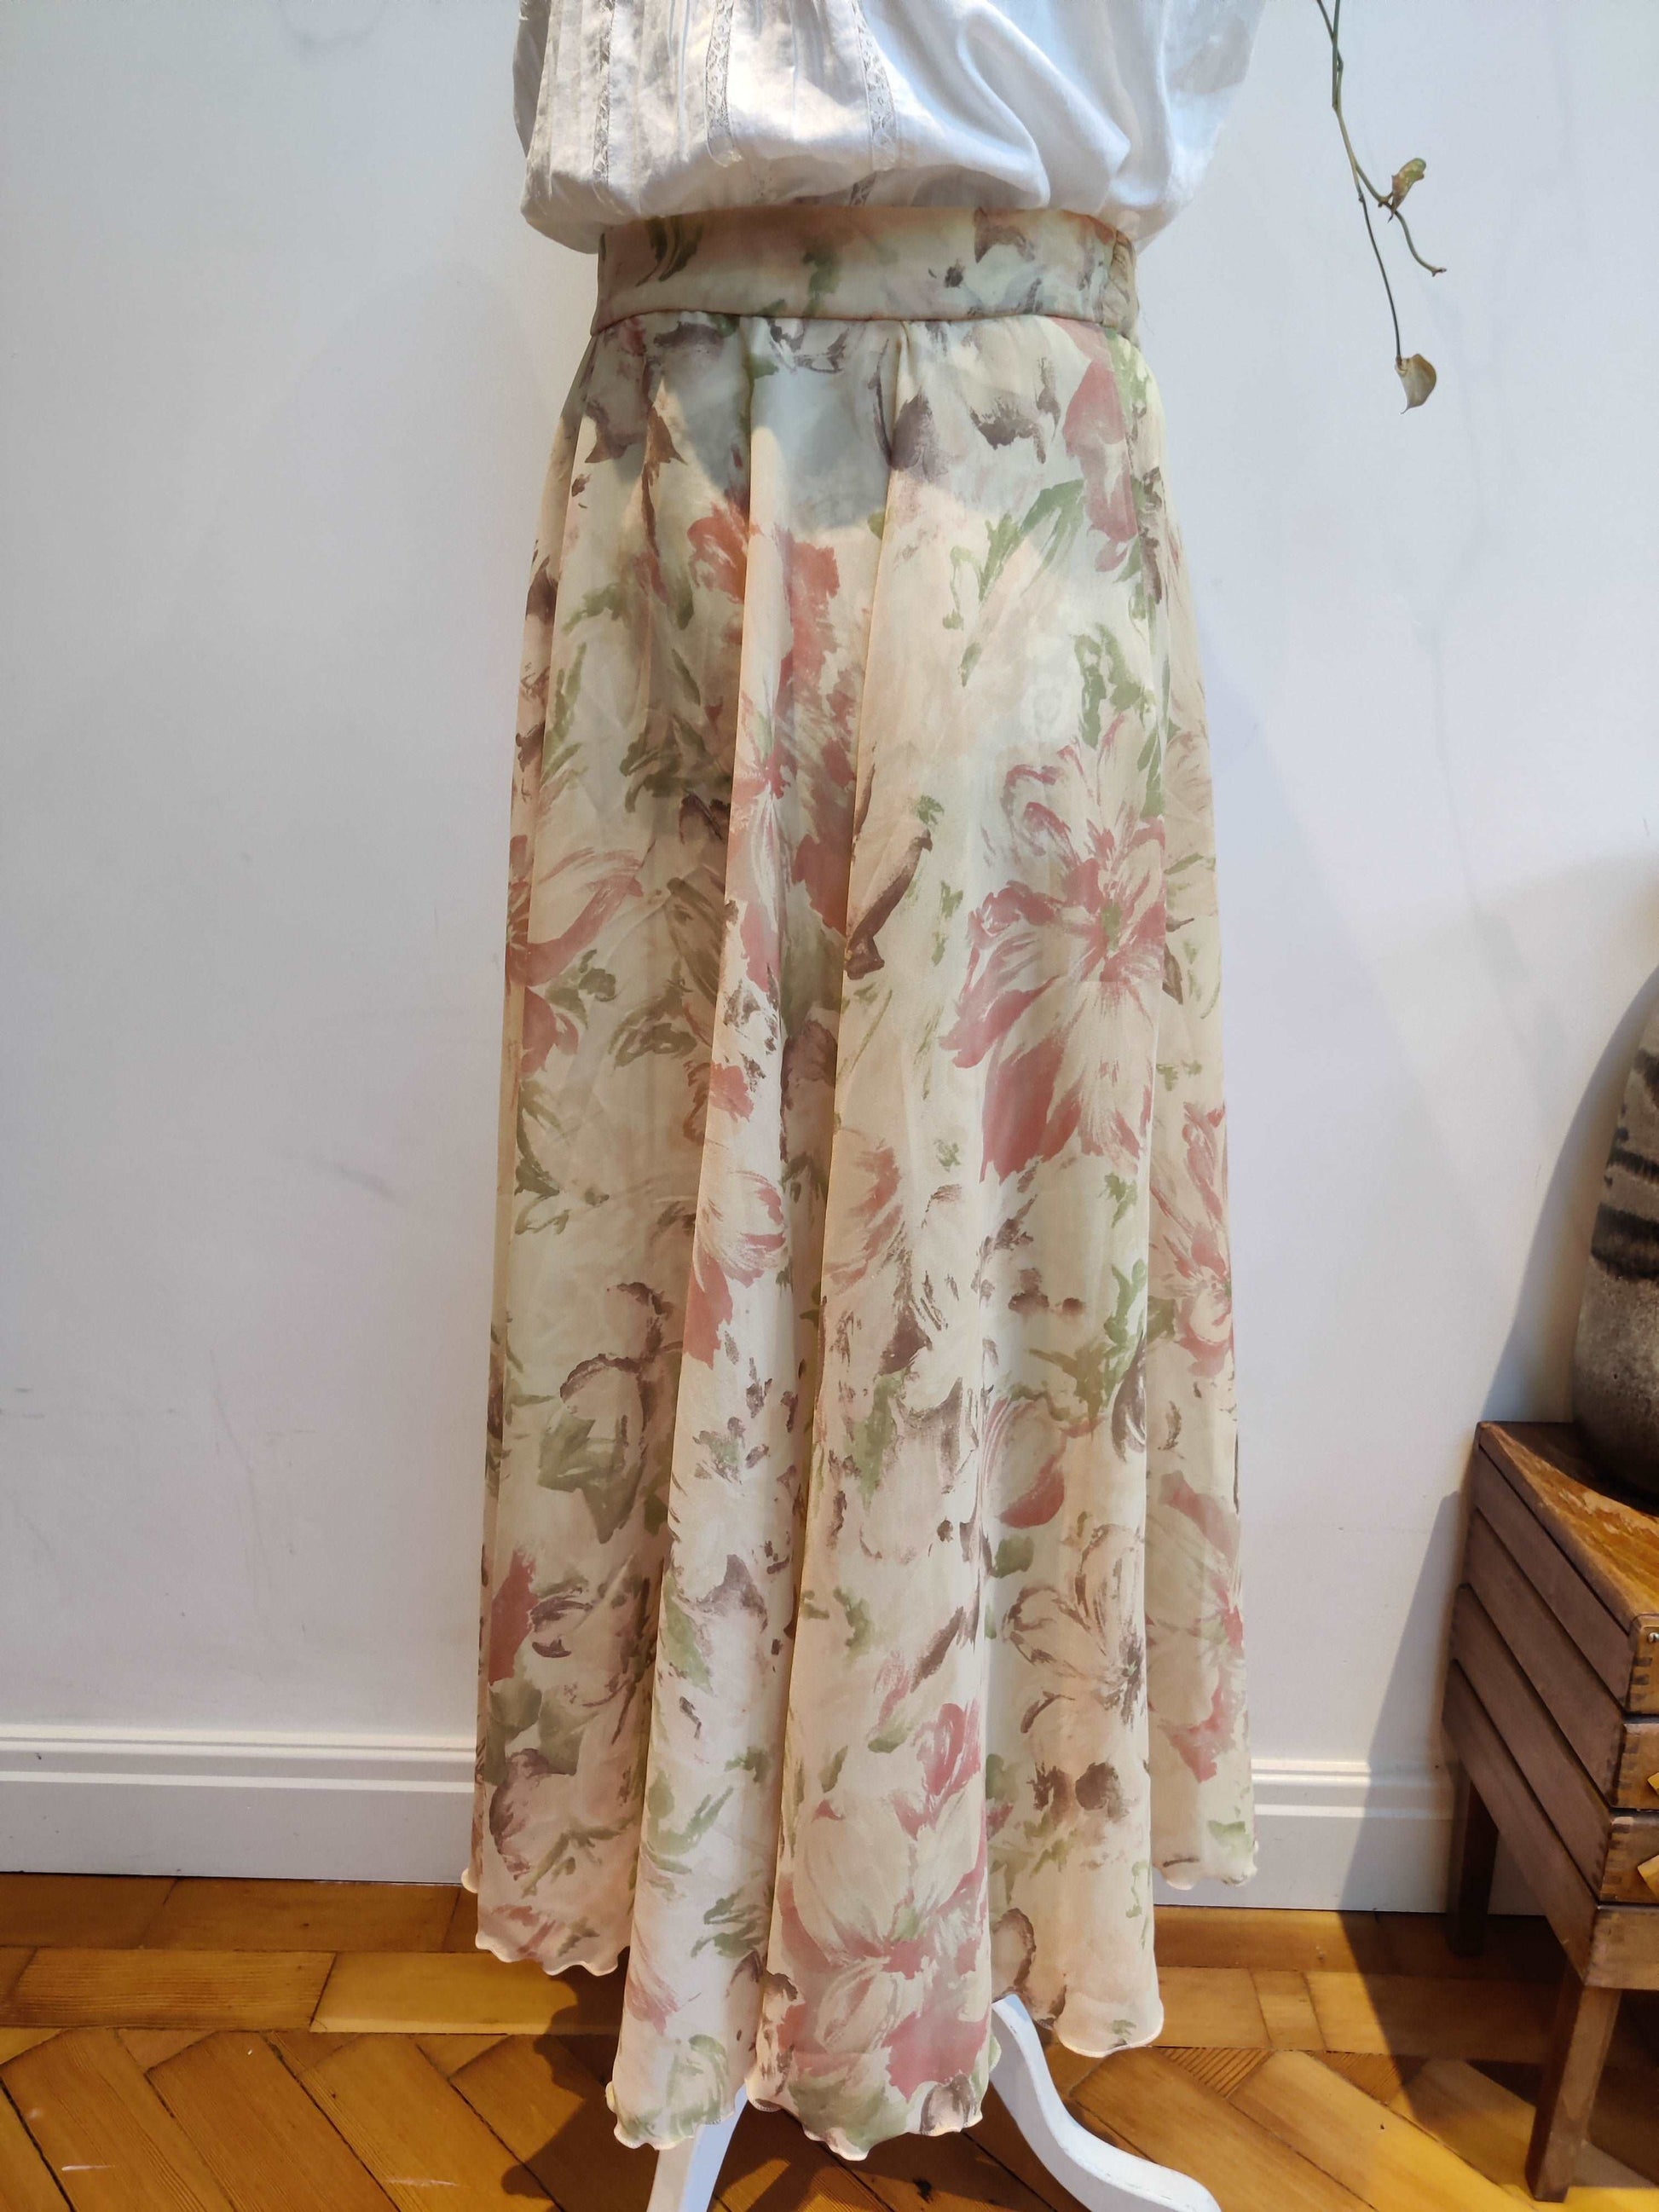 Vintage floral skirt. 